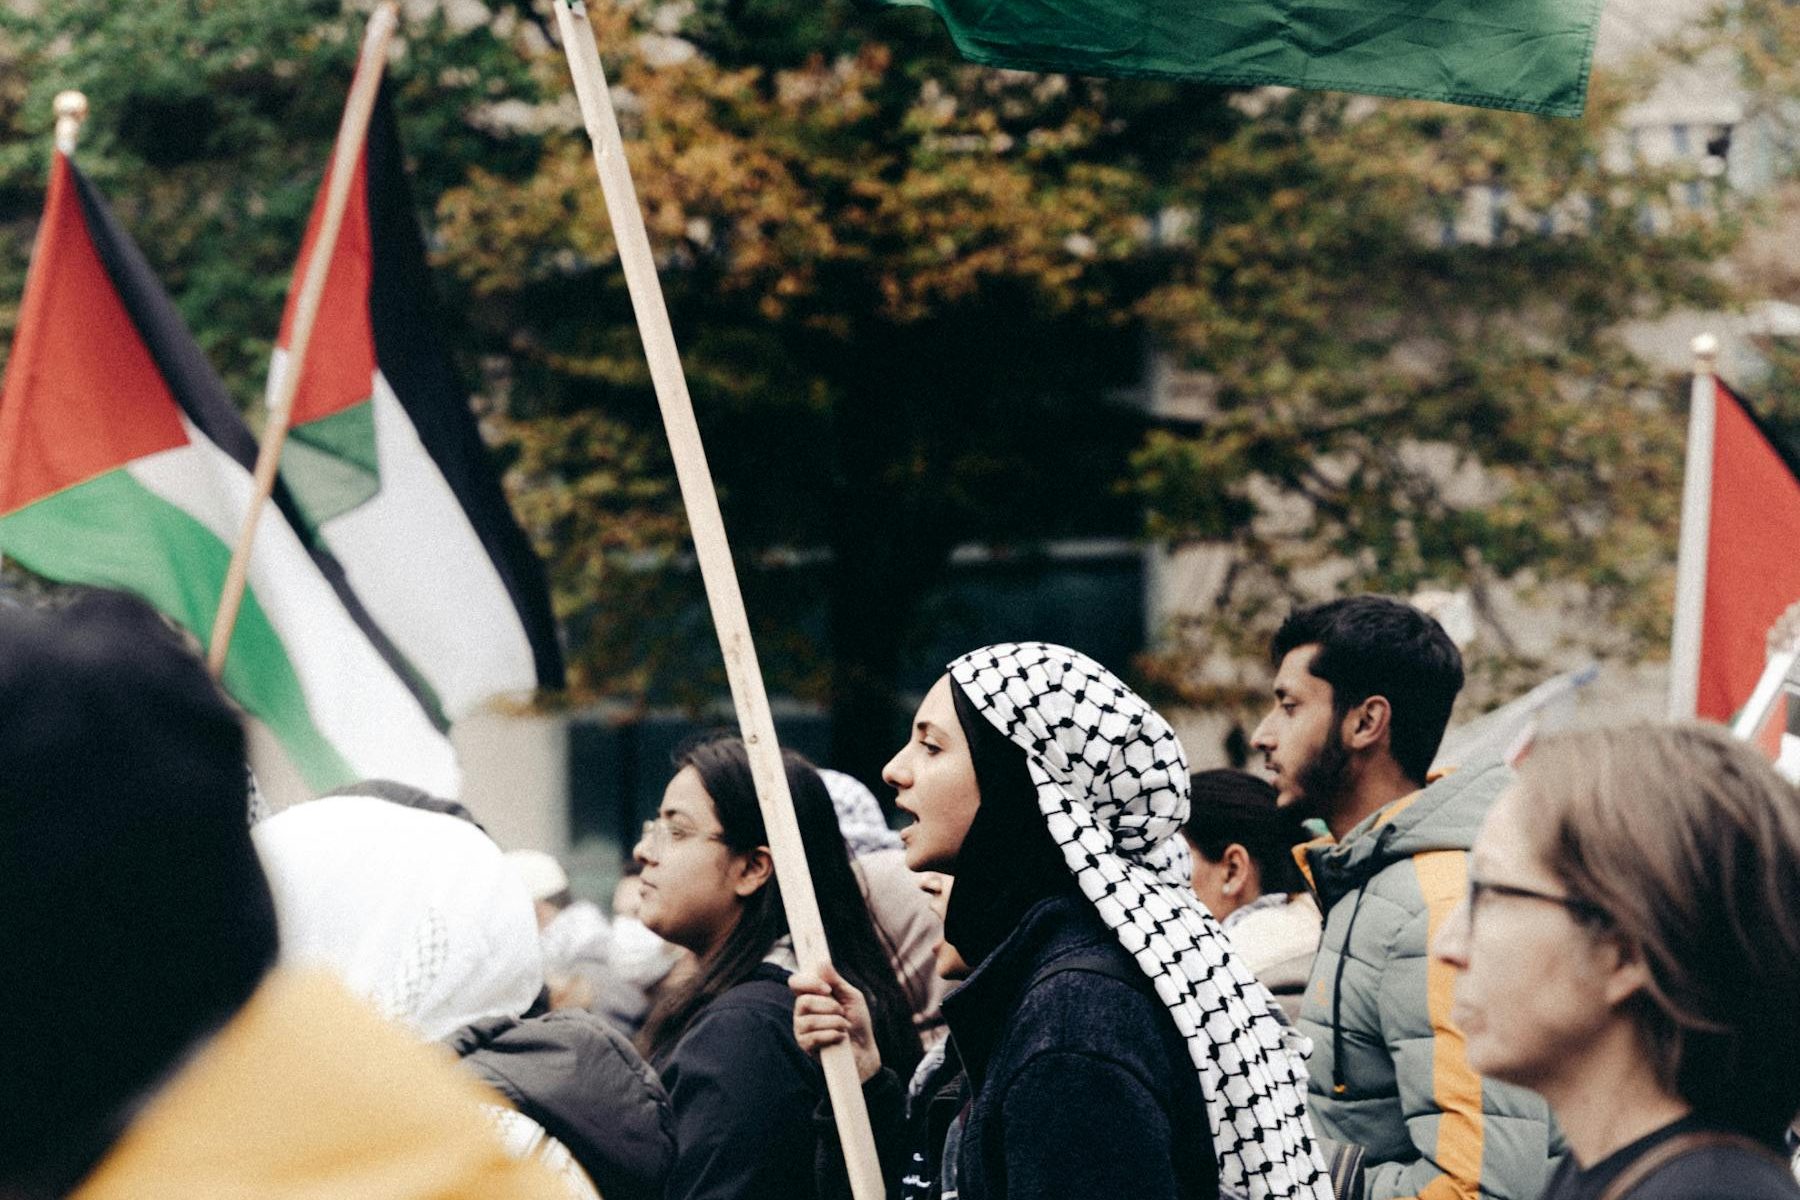 Eine Frau in Abbaya und mit Kuffiyeh trägt auf einer Demonstration einen Palästinafahne